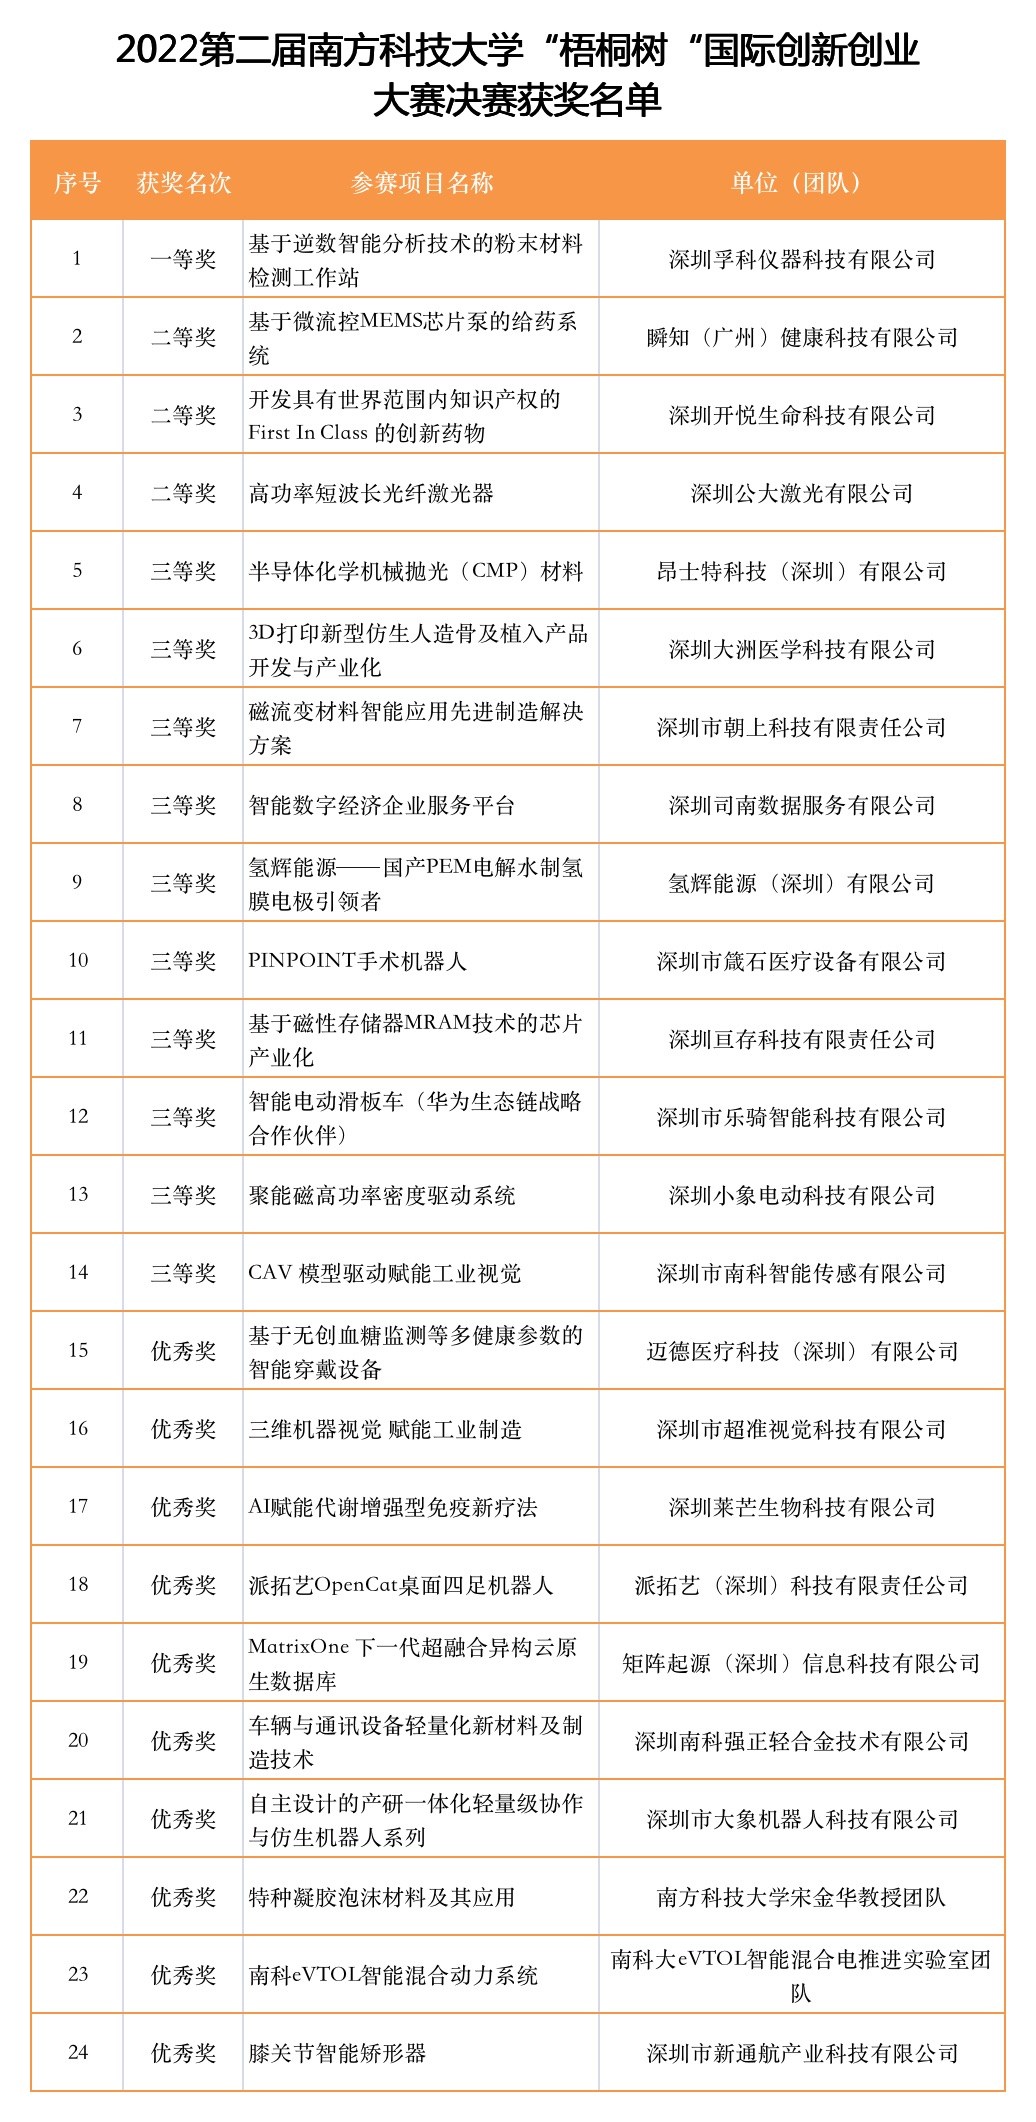 第二届南方科技大学“梧桐树”国际创新创业大赛决赛圆满落幕-ManBetX注册登录·(中国)